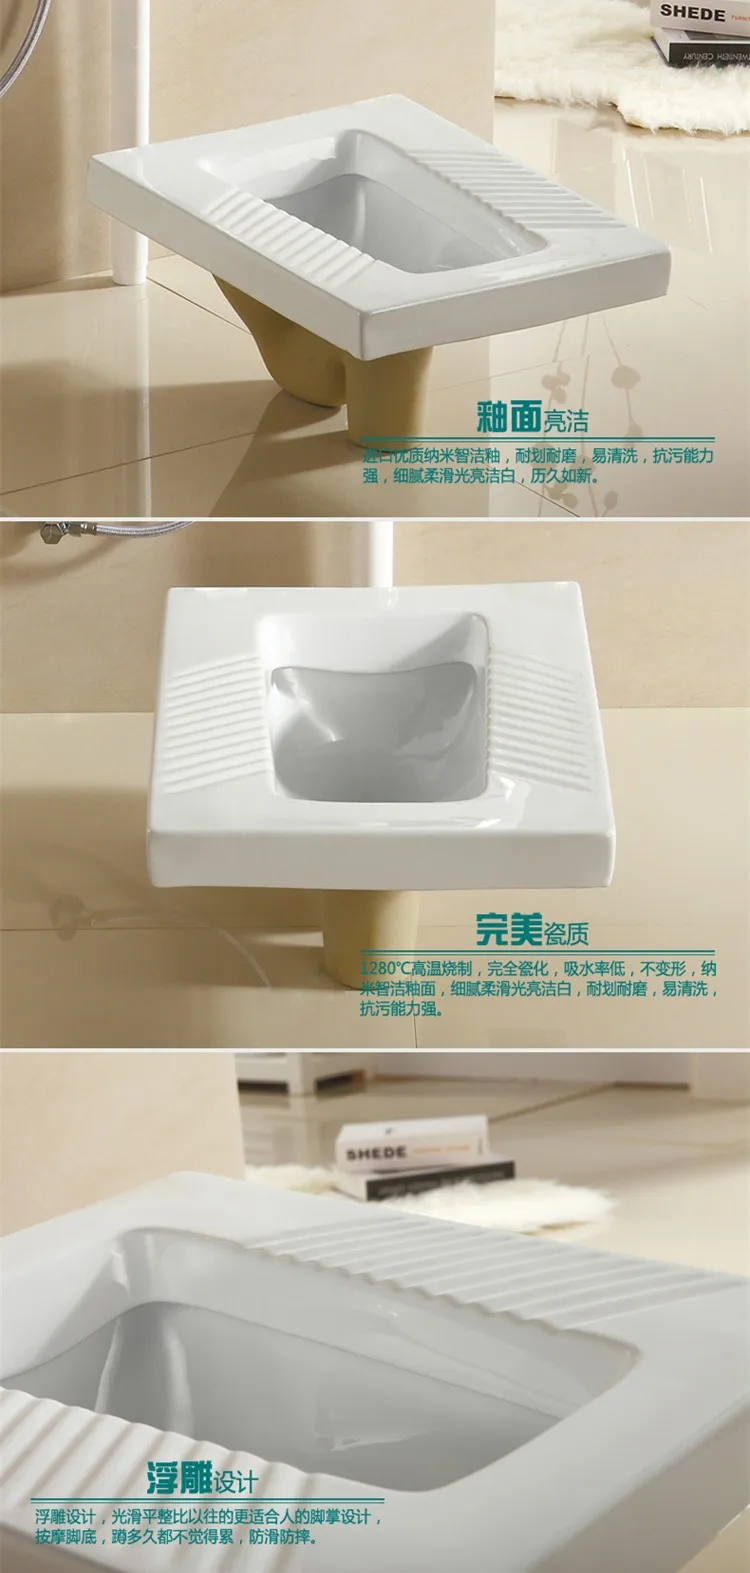 Bathroom ceramic squat toilet with flush